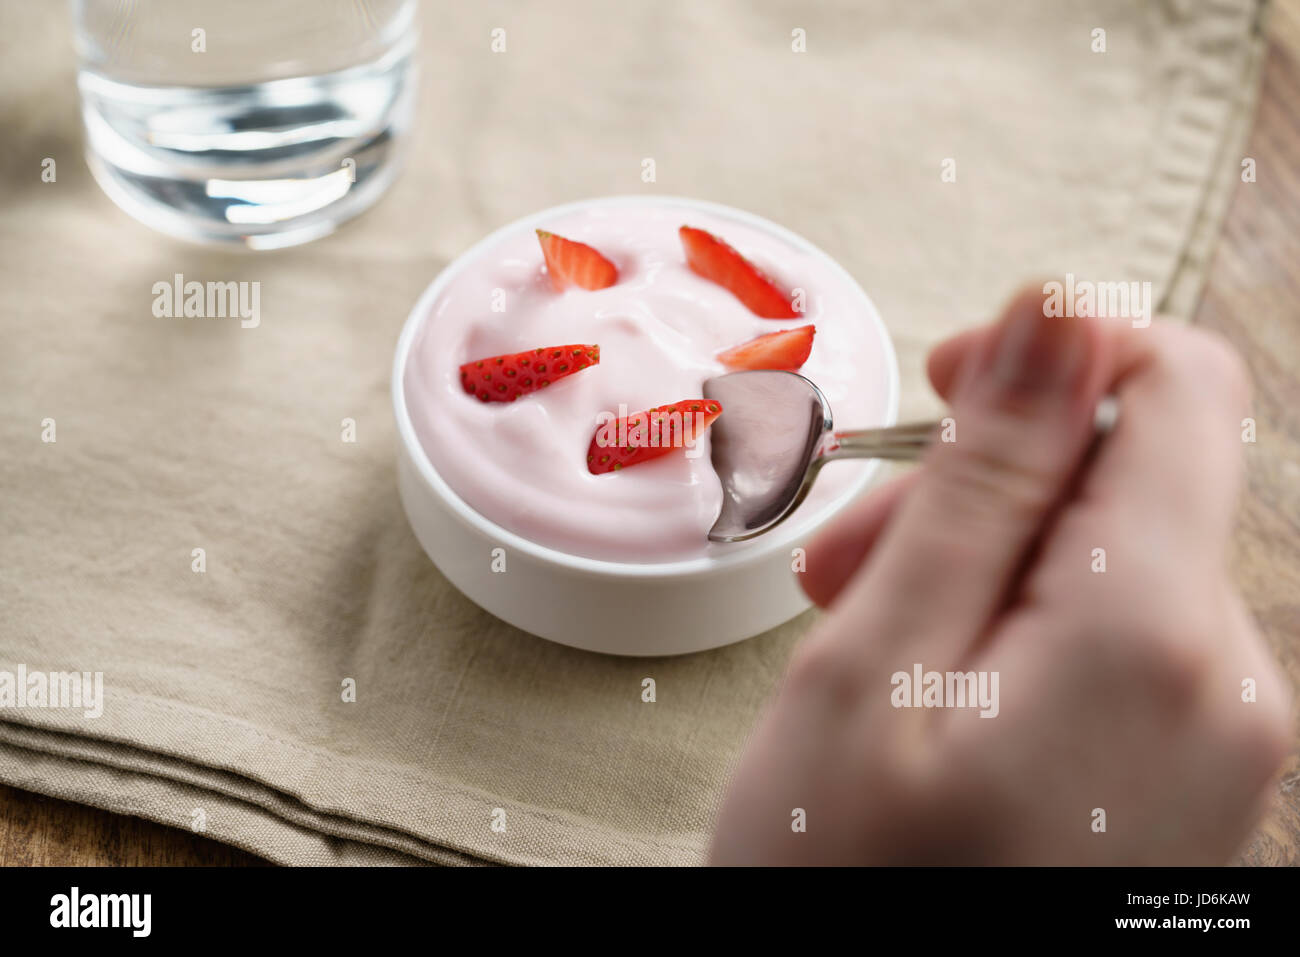 Pov teen ragazza mangiare a mano organici di yogurt alla fragola Foto Stock